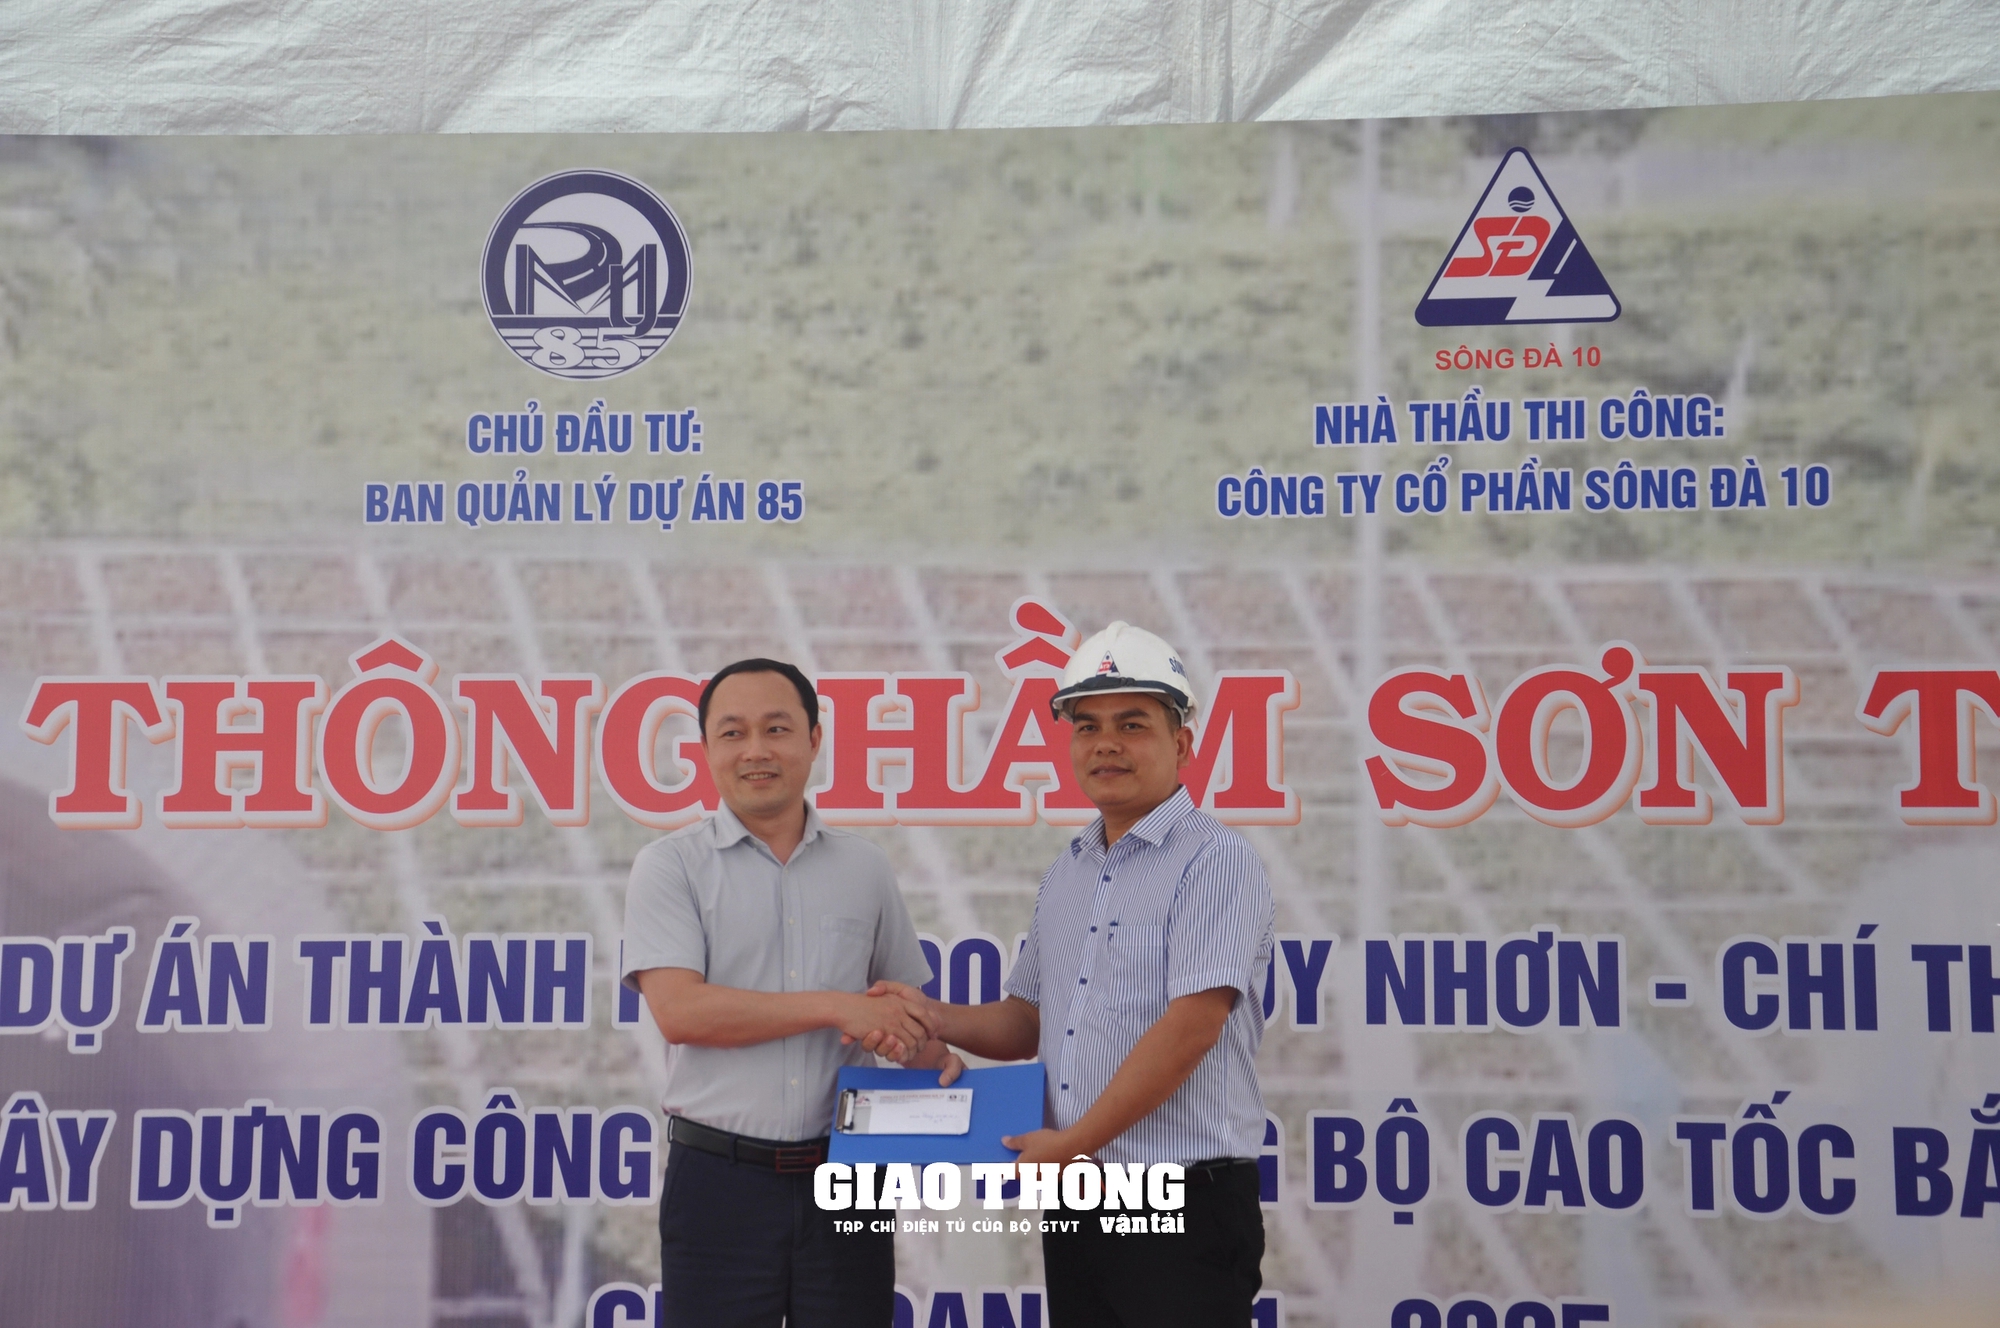 Thông hầm Sơn Triệu thuộc dự án cao tốc đoạn Quy Nhơn - Chí Thạnh vượt tiến độ 1 tháng- Ảnh 3.